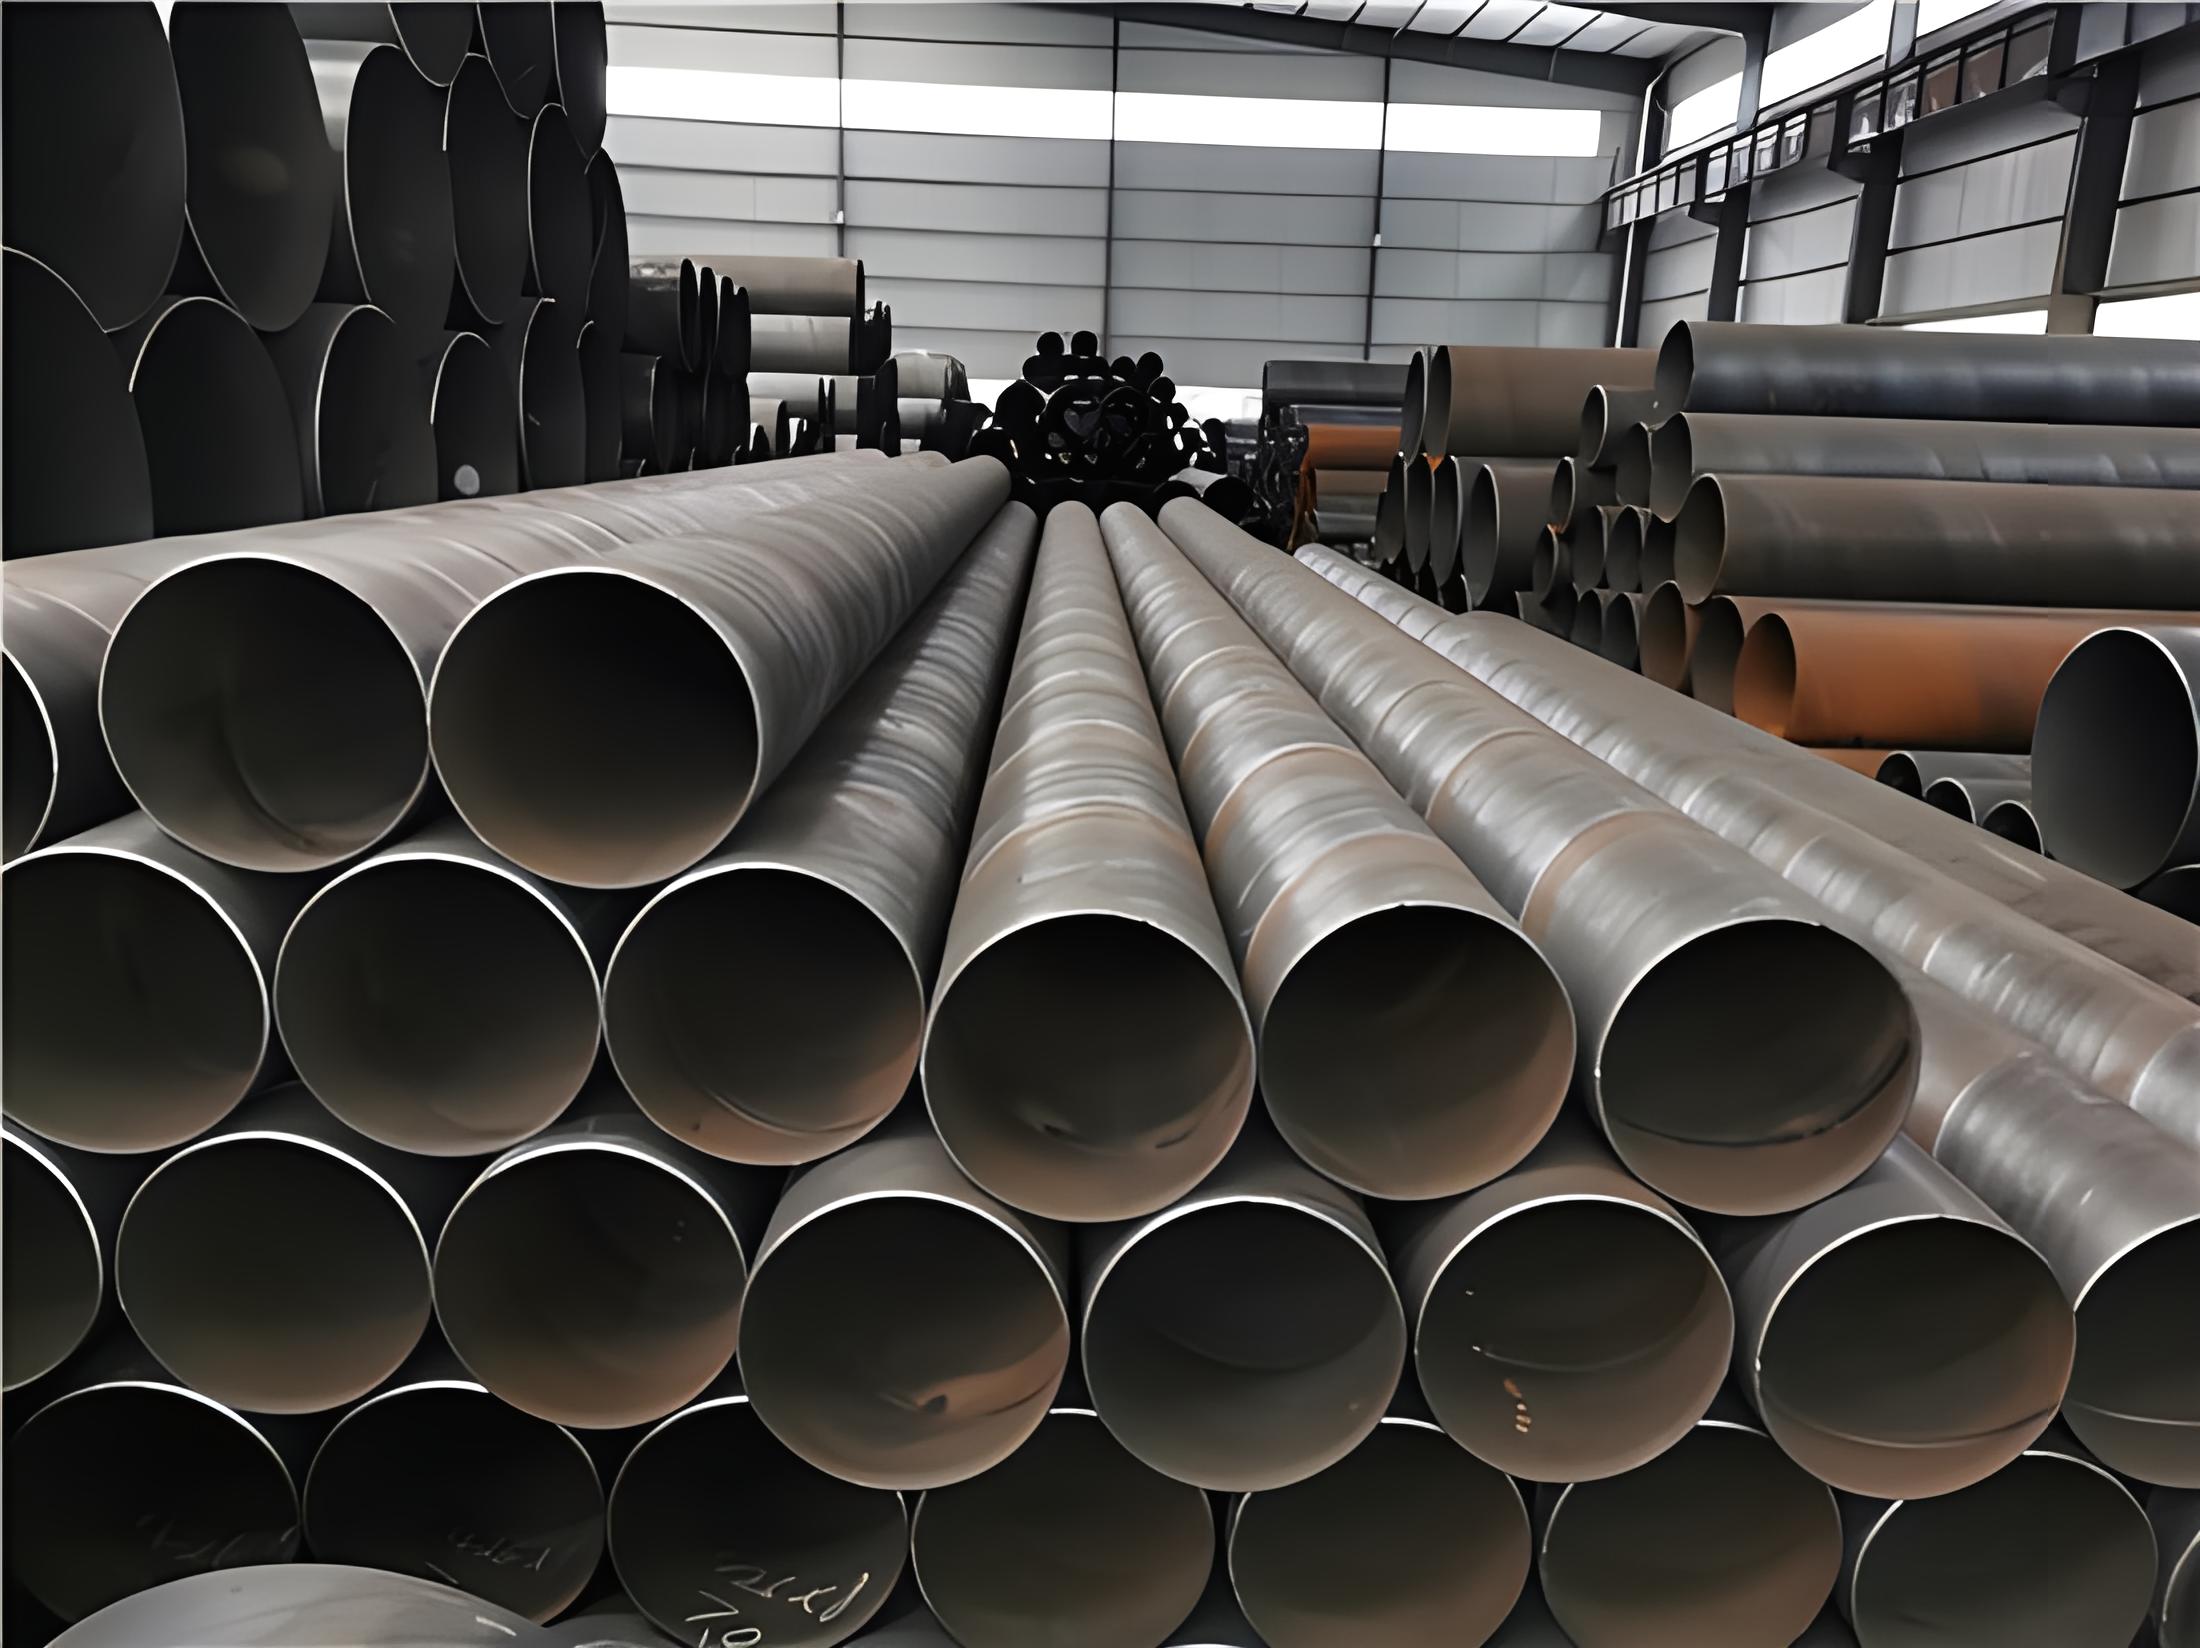 衢州螺旋钢管现代工业建设的坚实基石